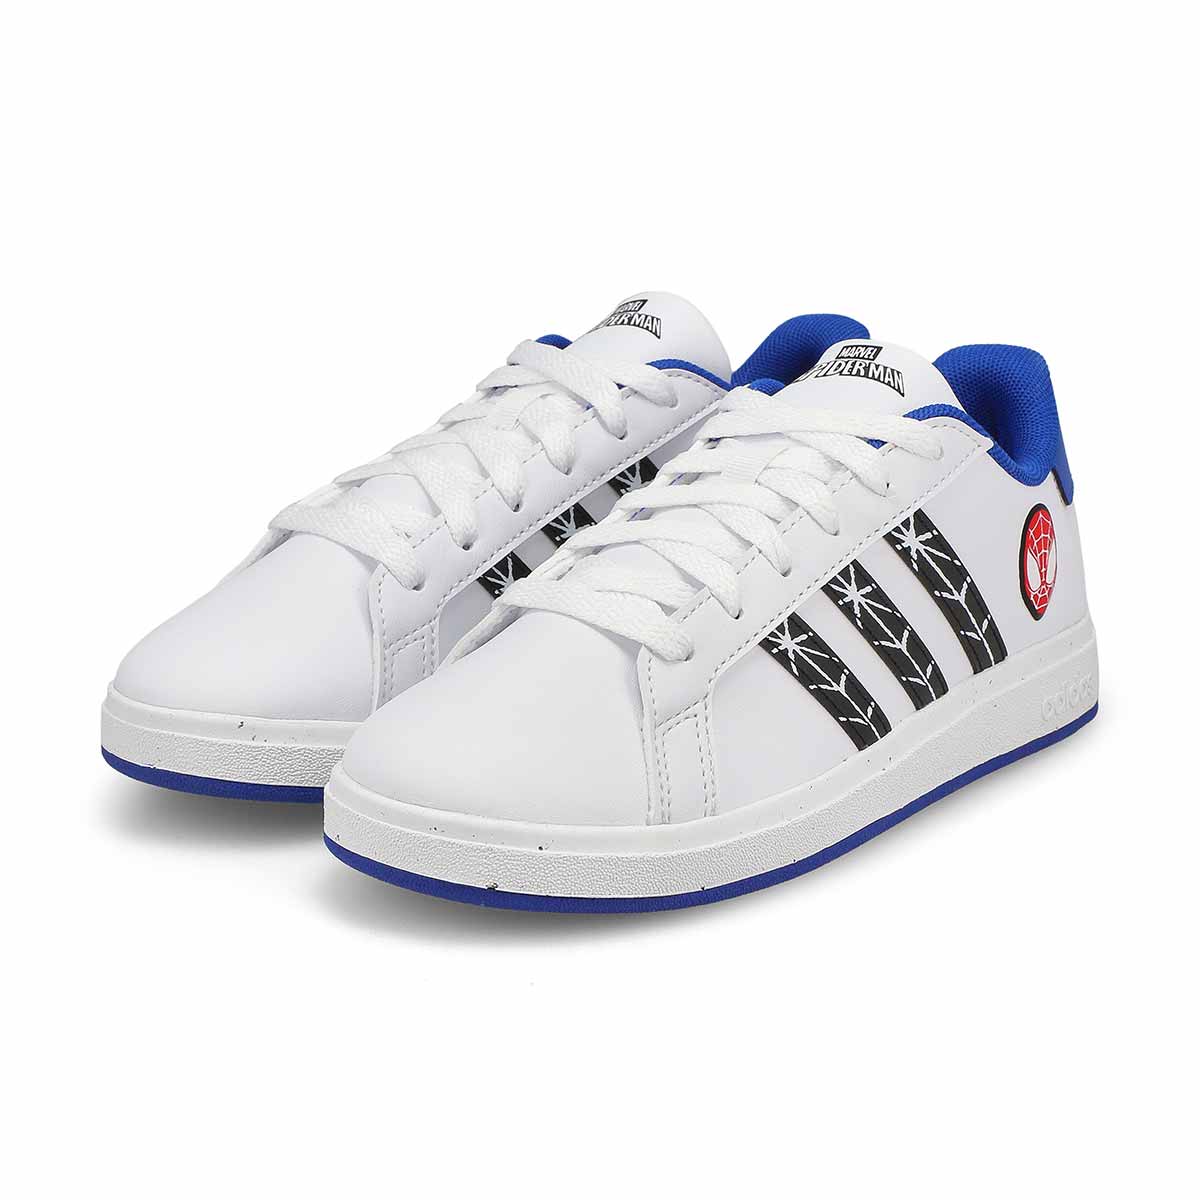 Kids' Grand Court Man K Sneaker - White/Black/Blue